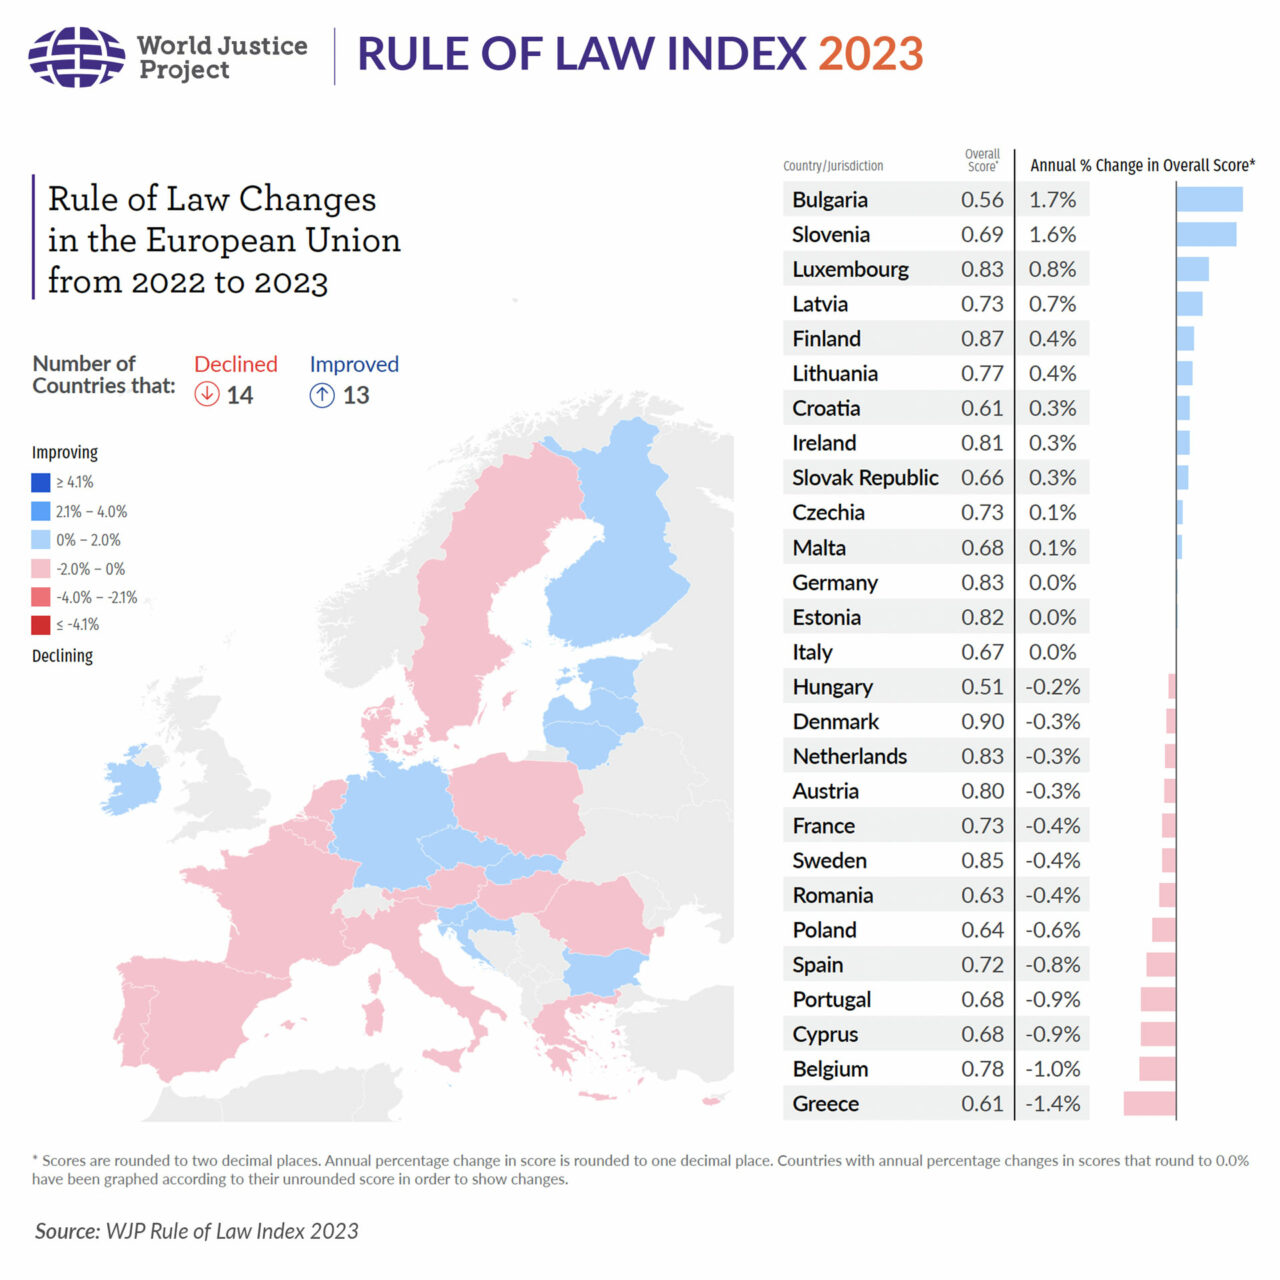 Cambios en el Estado de derecho en la UE 2022-2023